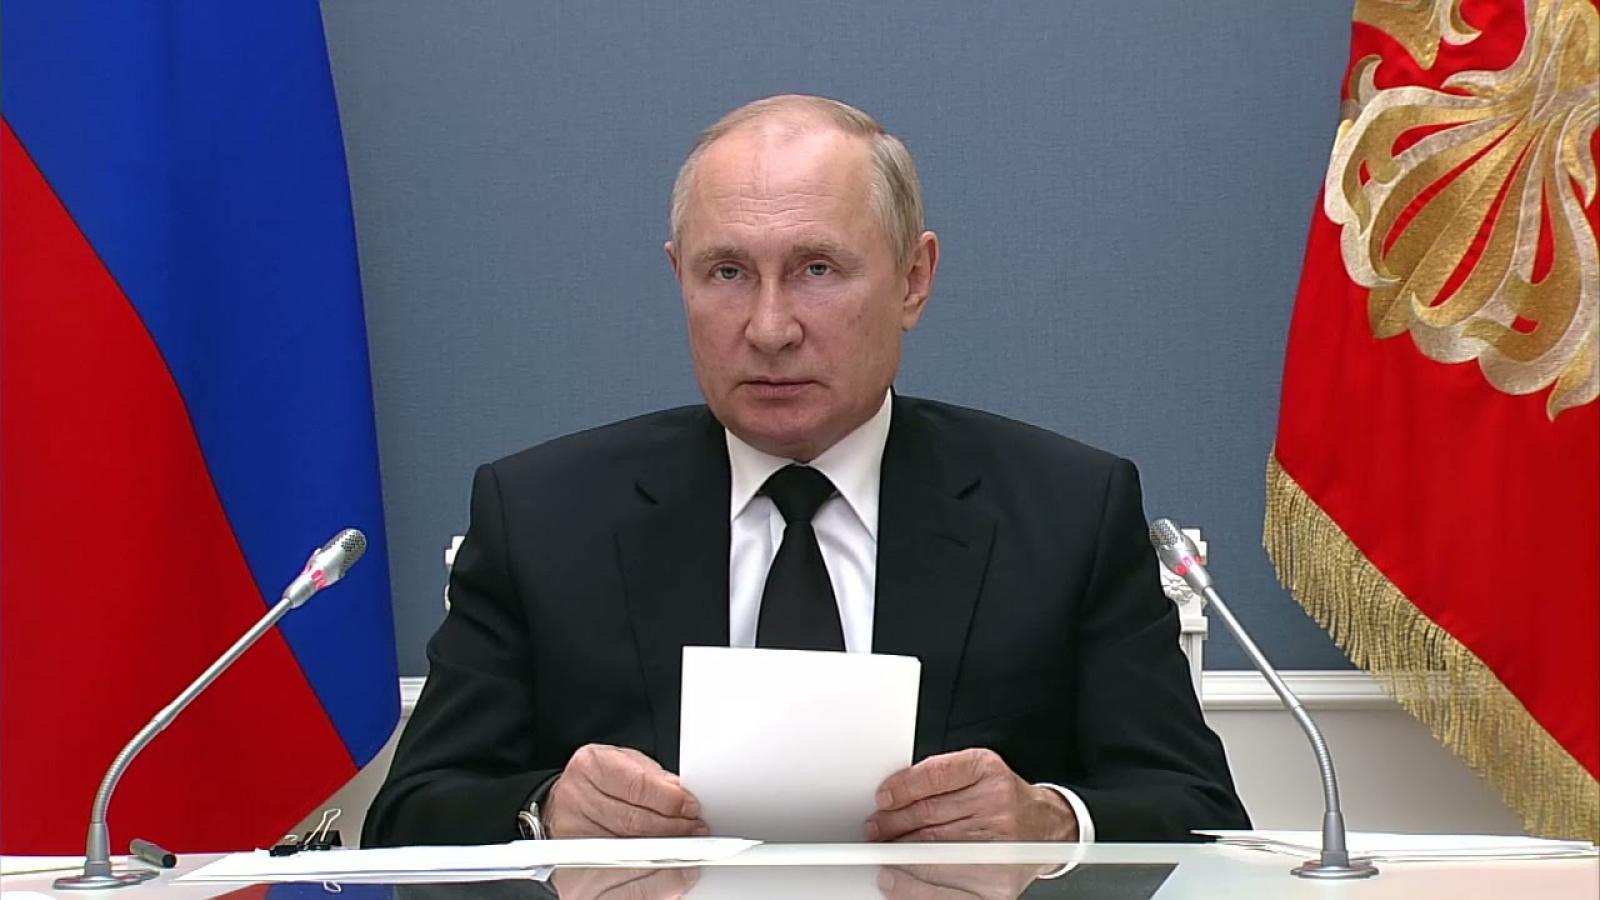 30 сентября Путин выступит перед гражданами